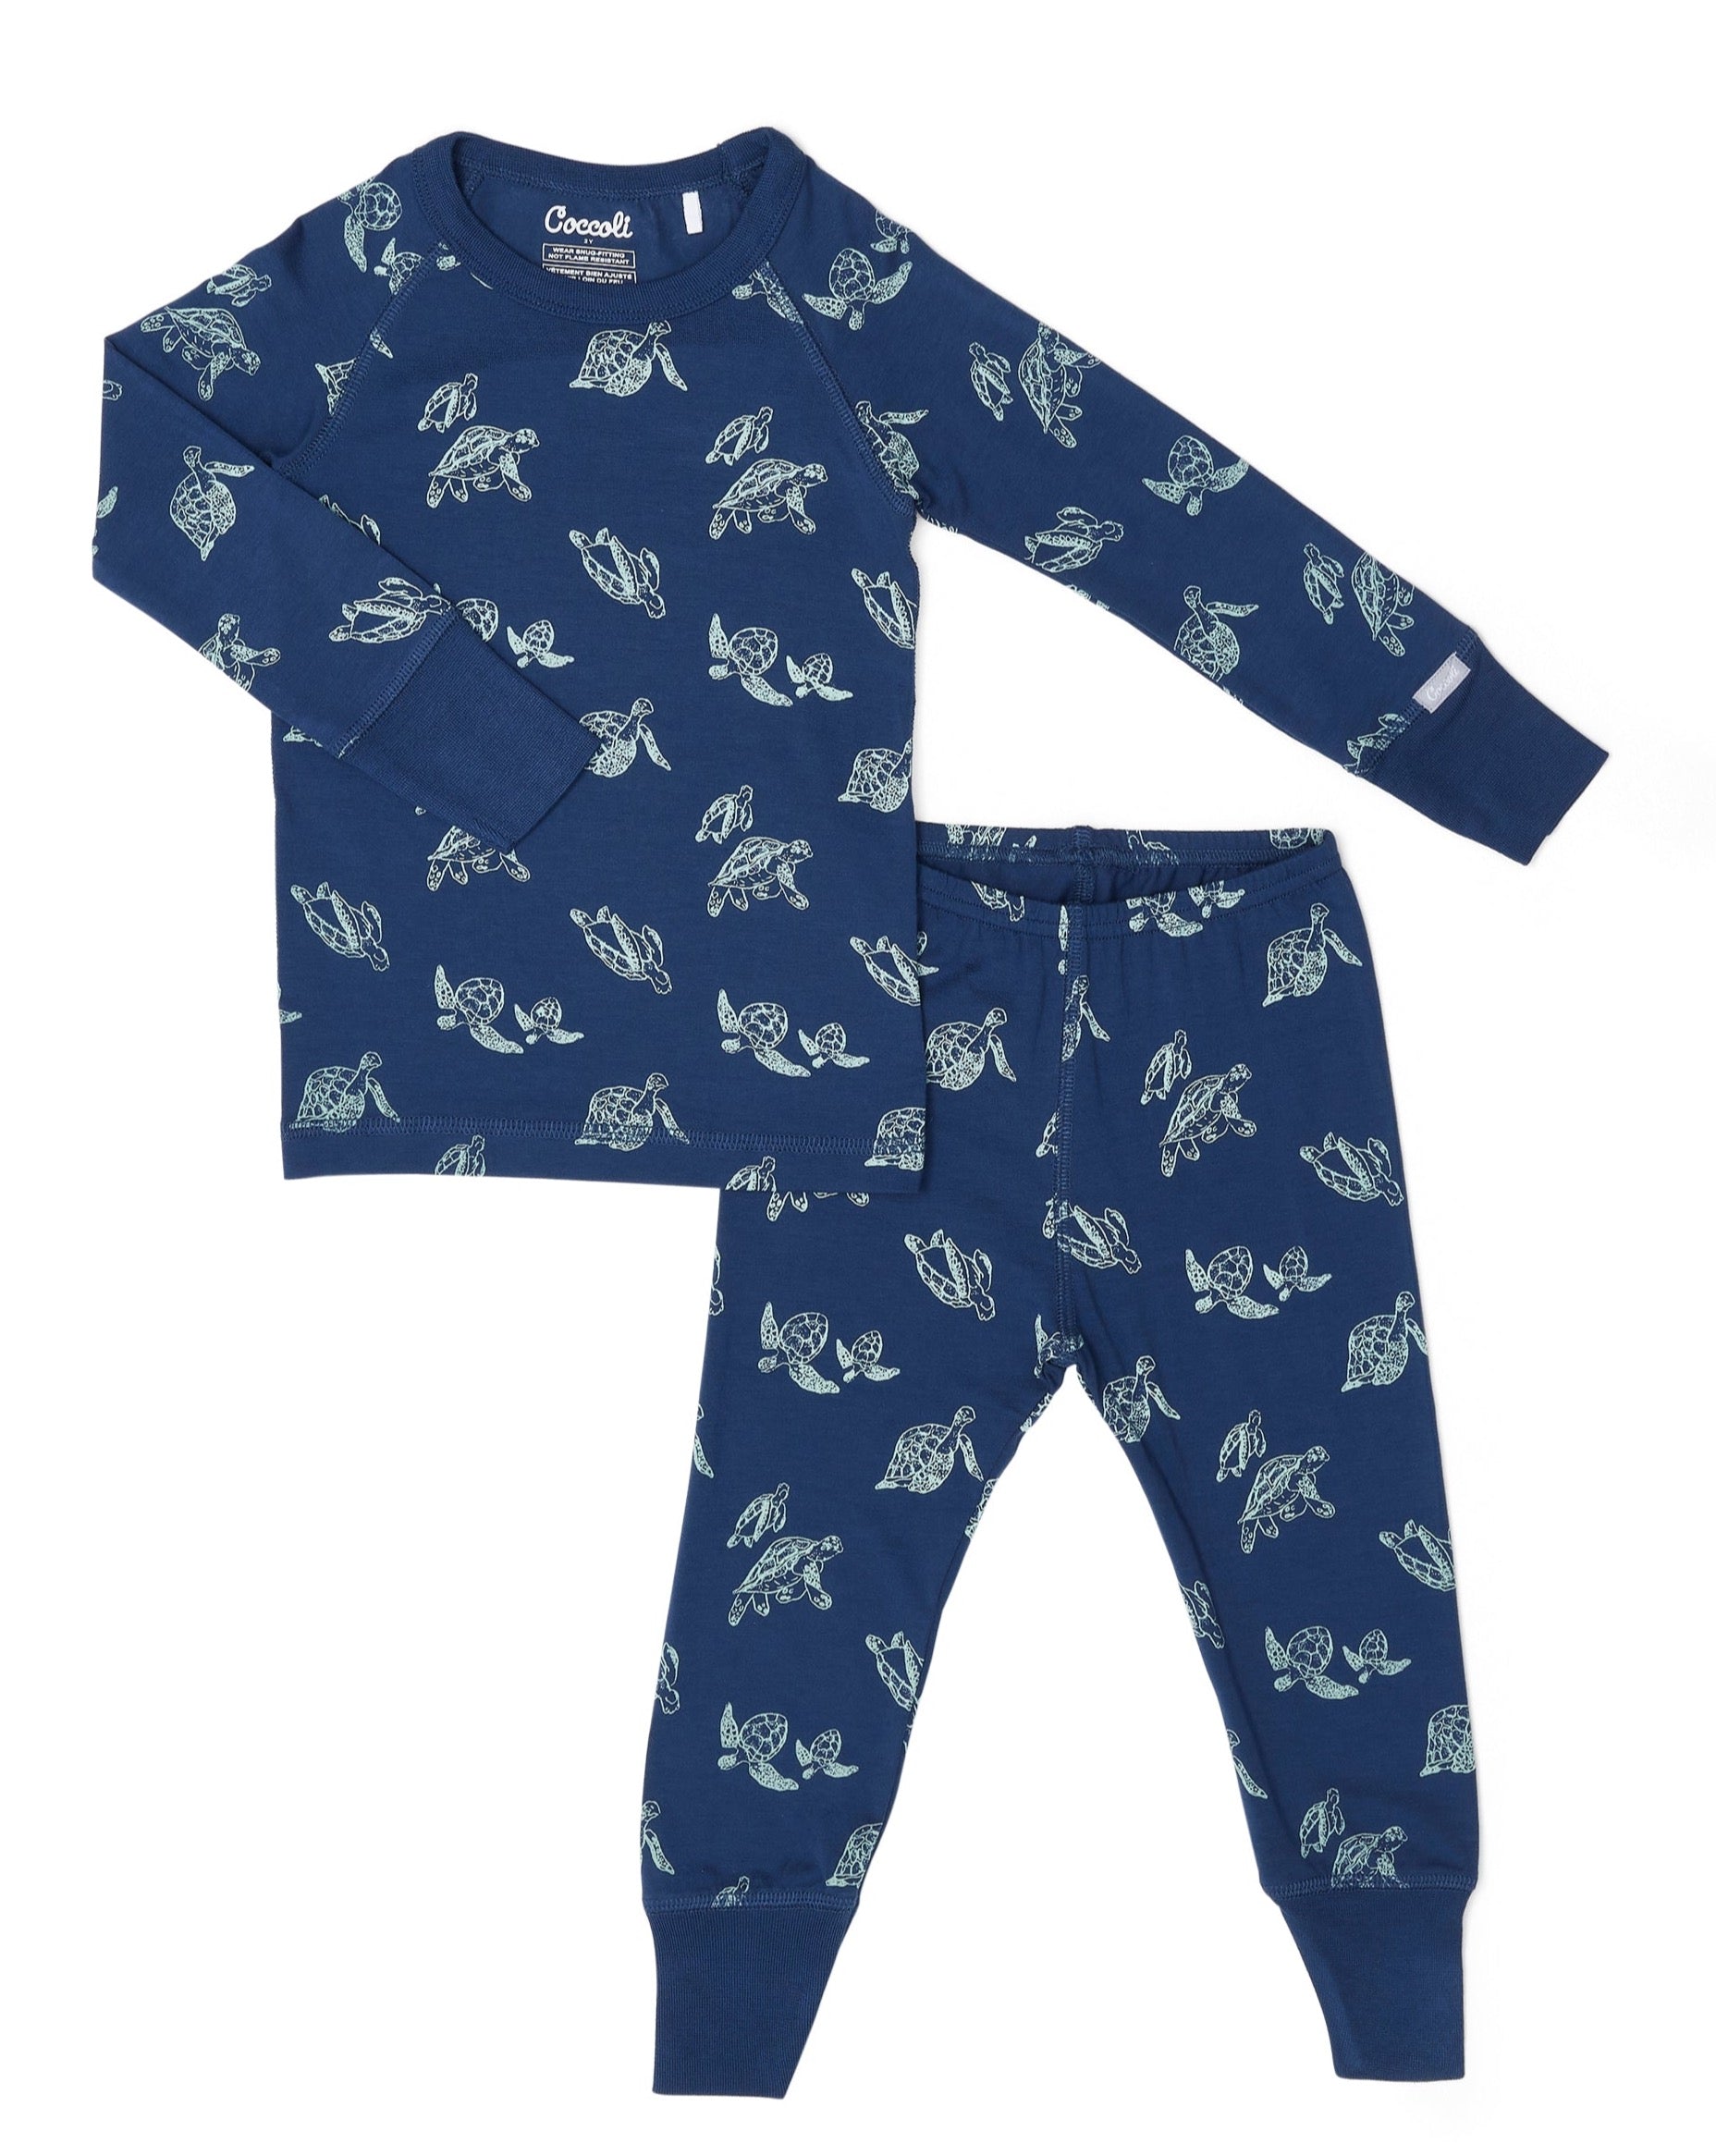 Cotton Modal Long Sleeve Pyjama - Turtles on Marine